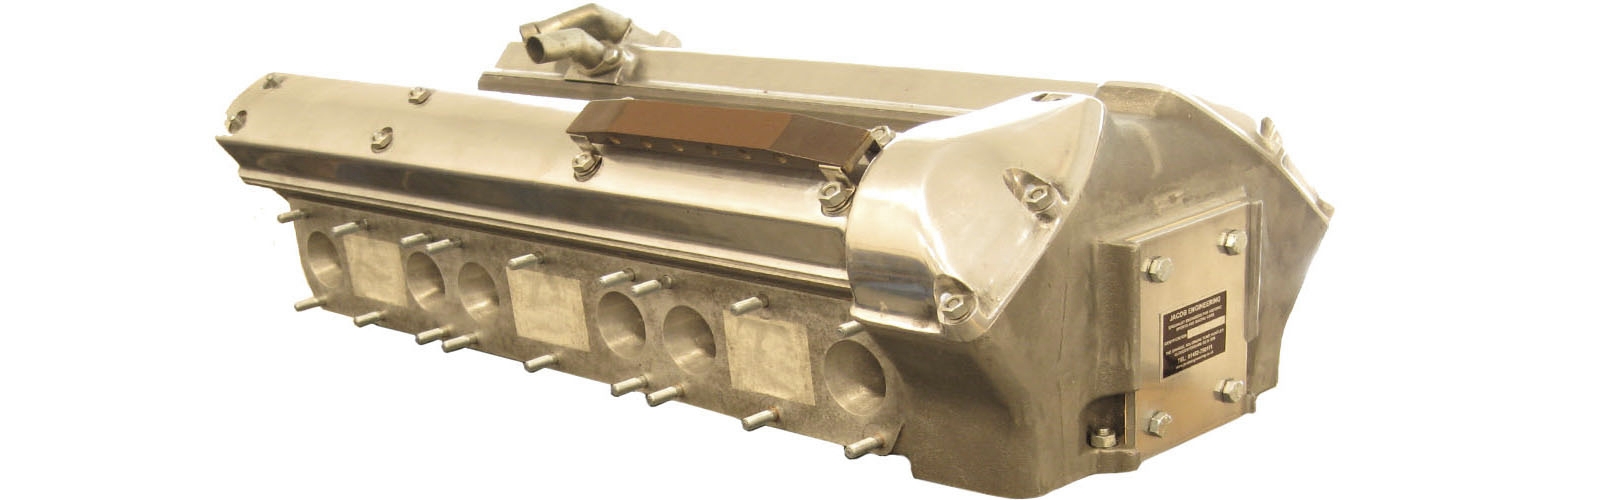 Jaguar D Type Engine.  Jaguar Wide Angle Cylinder Head